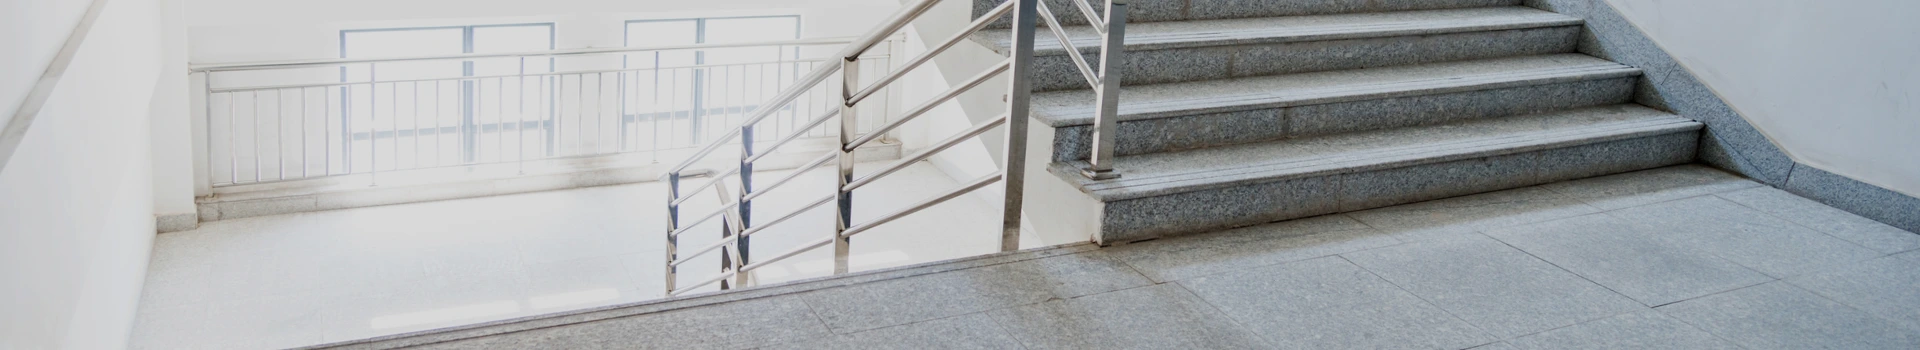 szare schody z metalowymi barierkami